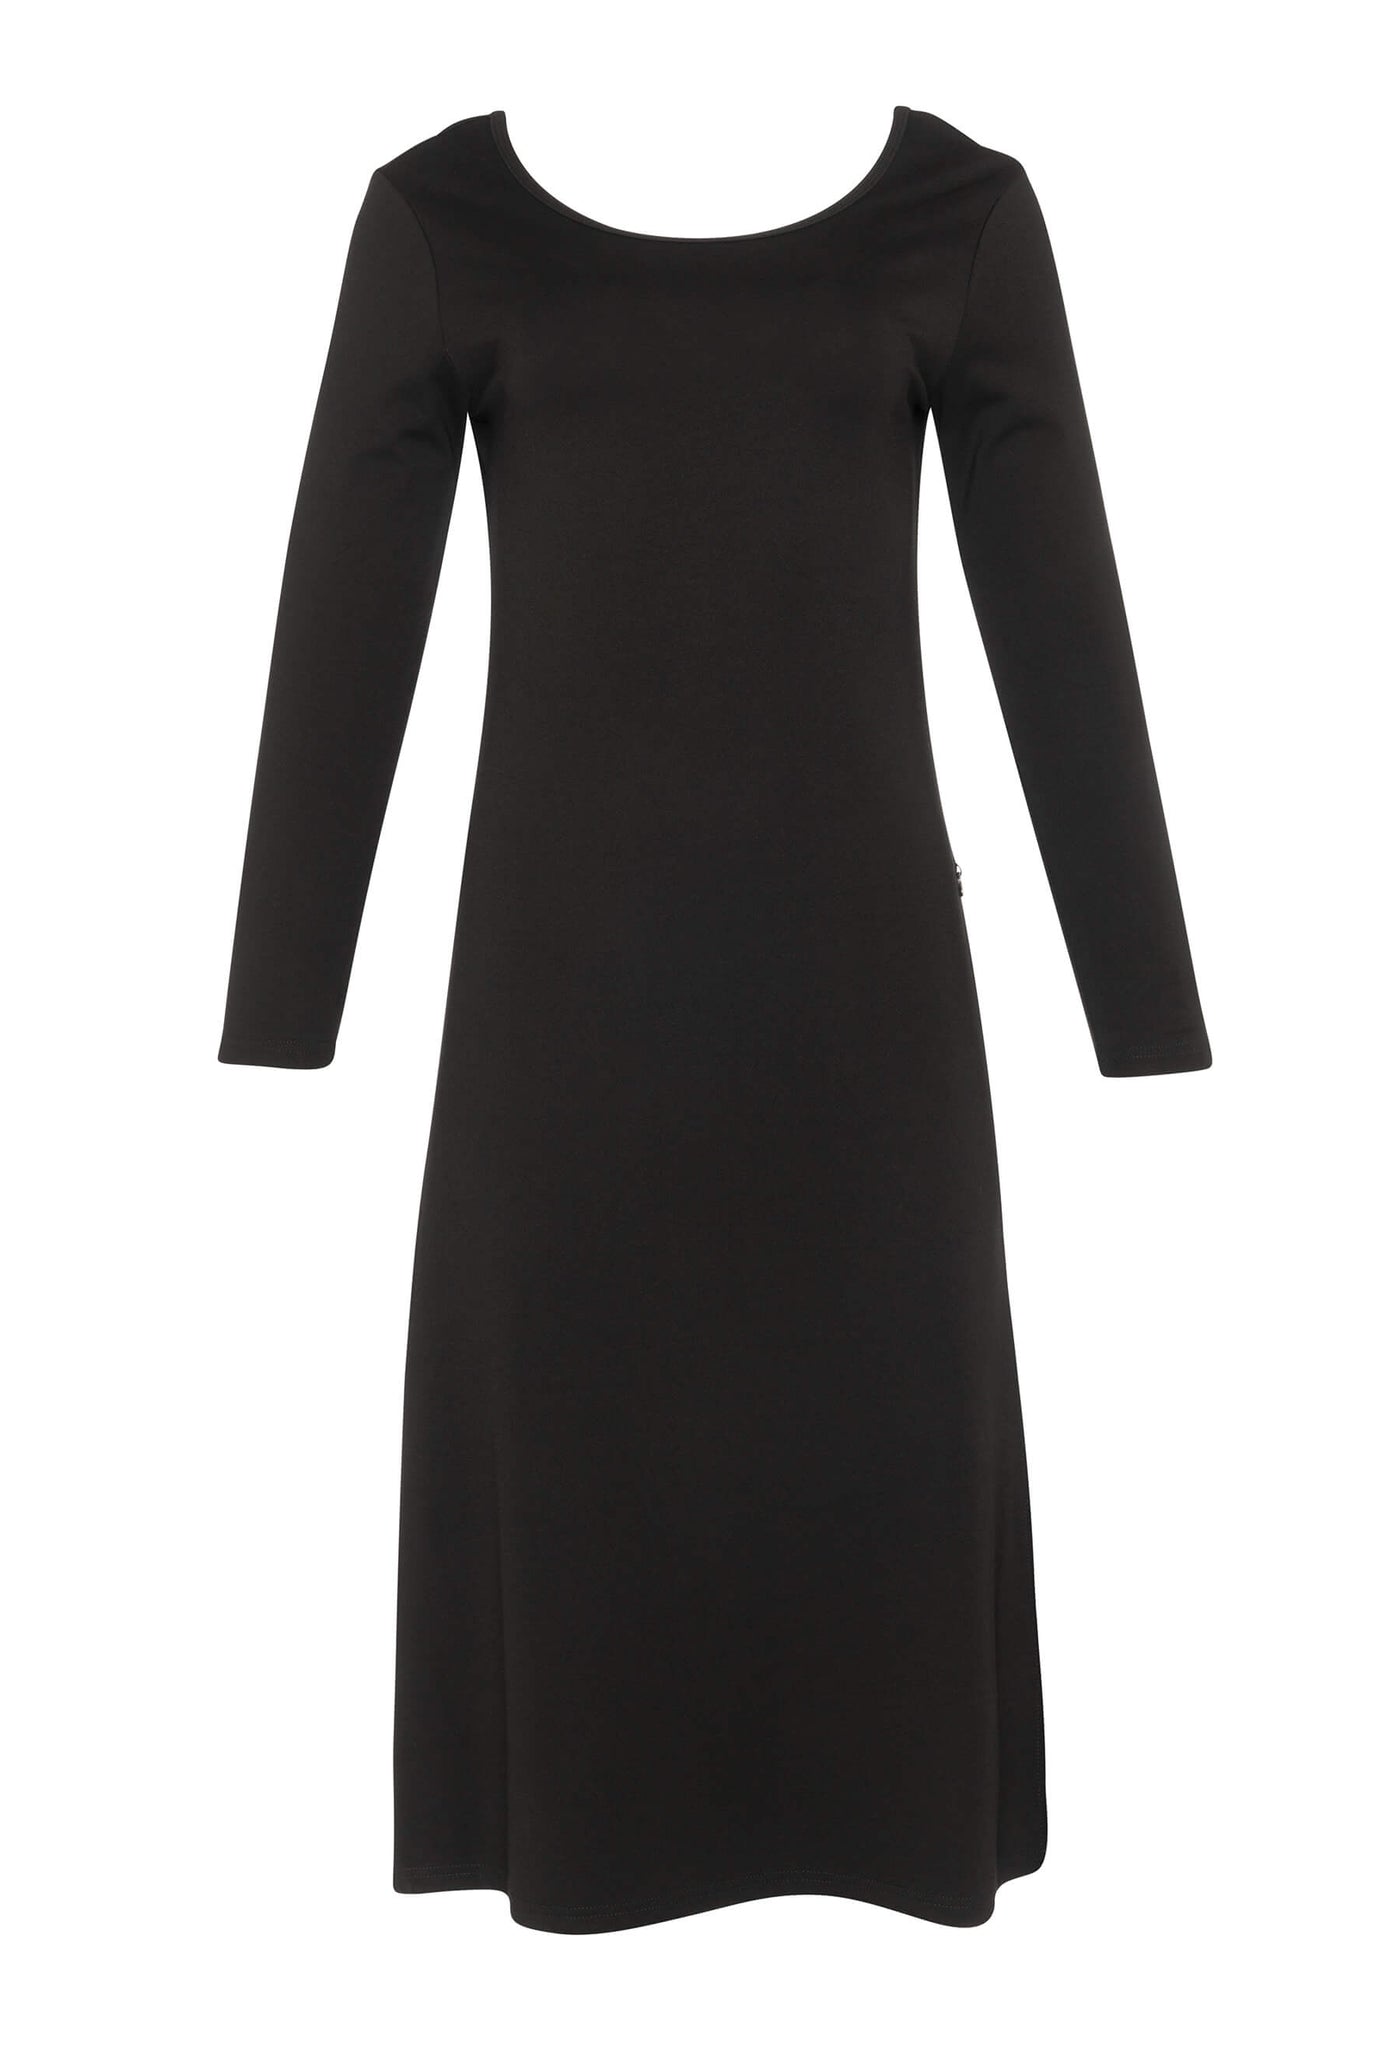 Découvrez la robe noire Amalia conçue par Katy St-Laurent. Cette robe noire de longueur midi est élégante et offre un look raffiné.